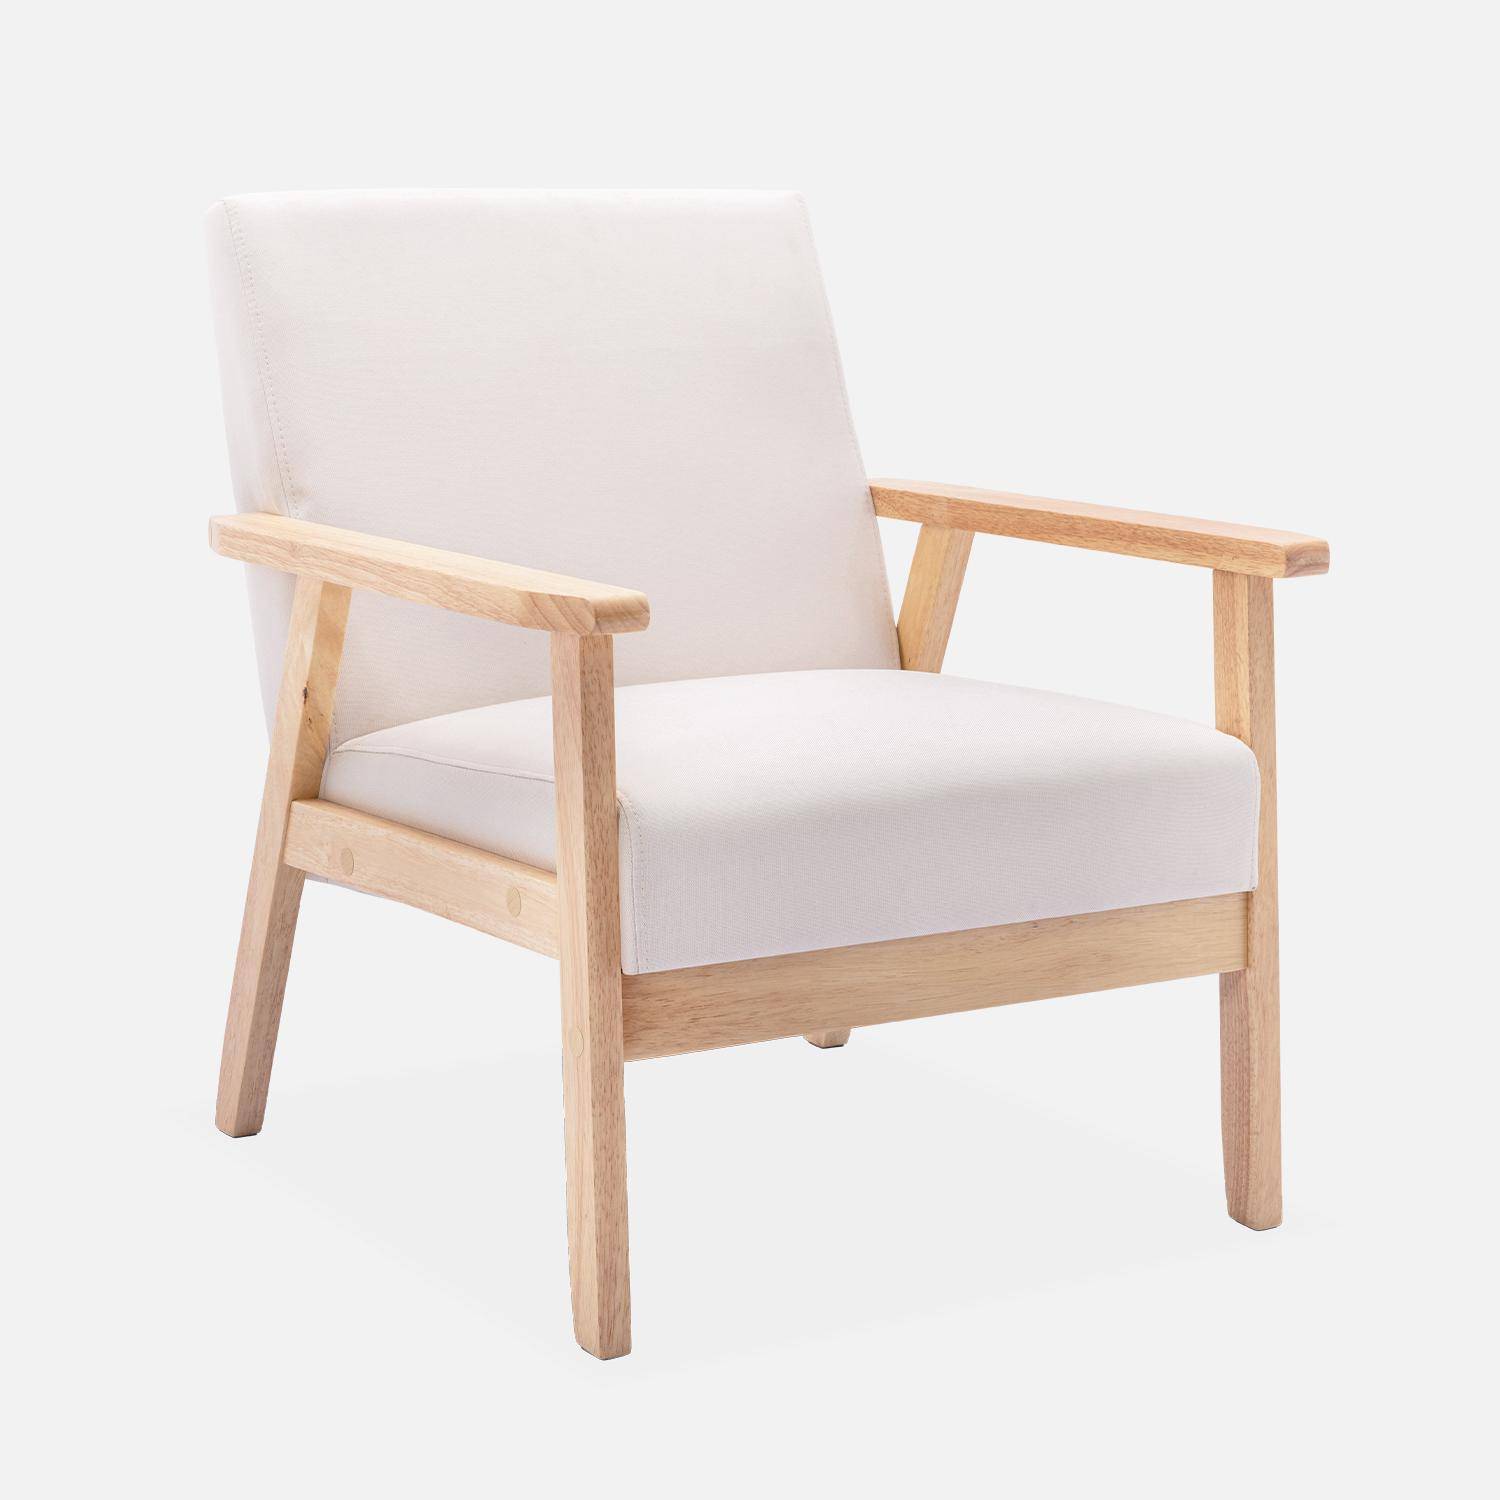 Scandi-style armchair, wooden frame, 64x69.5x73cm - Isak - Beige Photo3